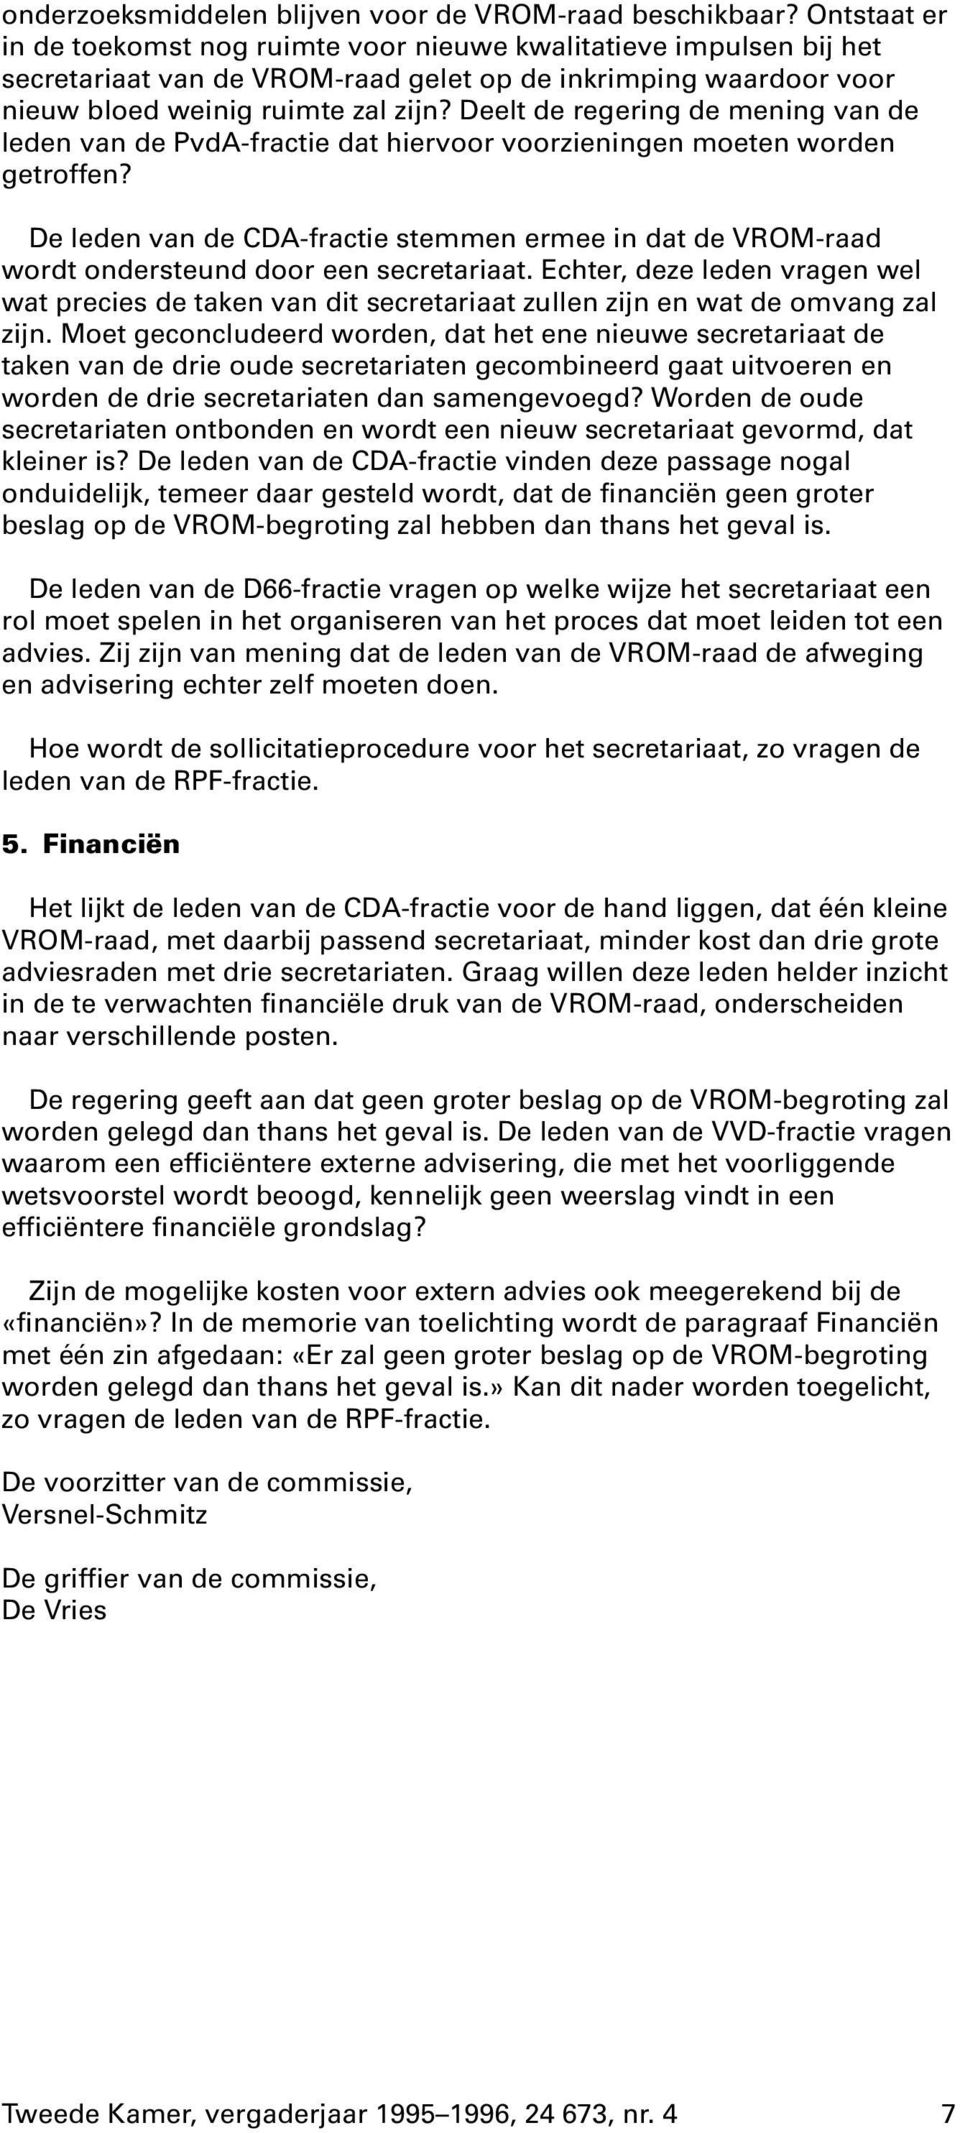 Deelt de regering de mening van de leden van de PvdA-fractie dat hiervoor voorzieningen moeten worden getroffen?